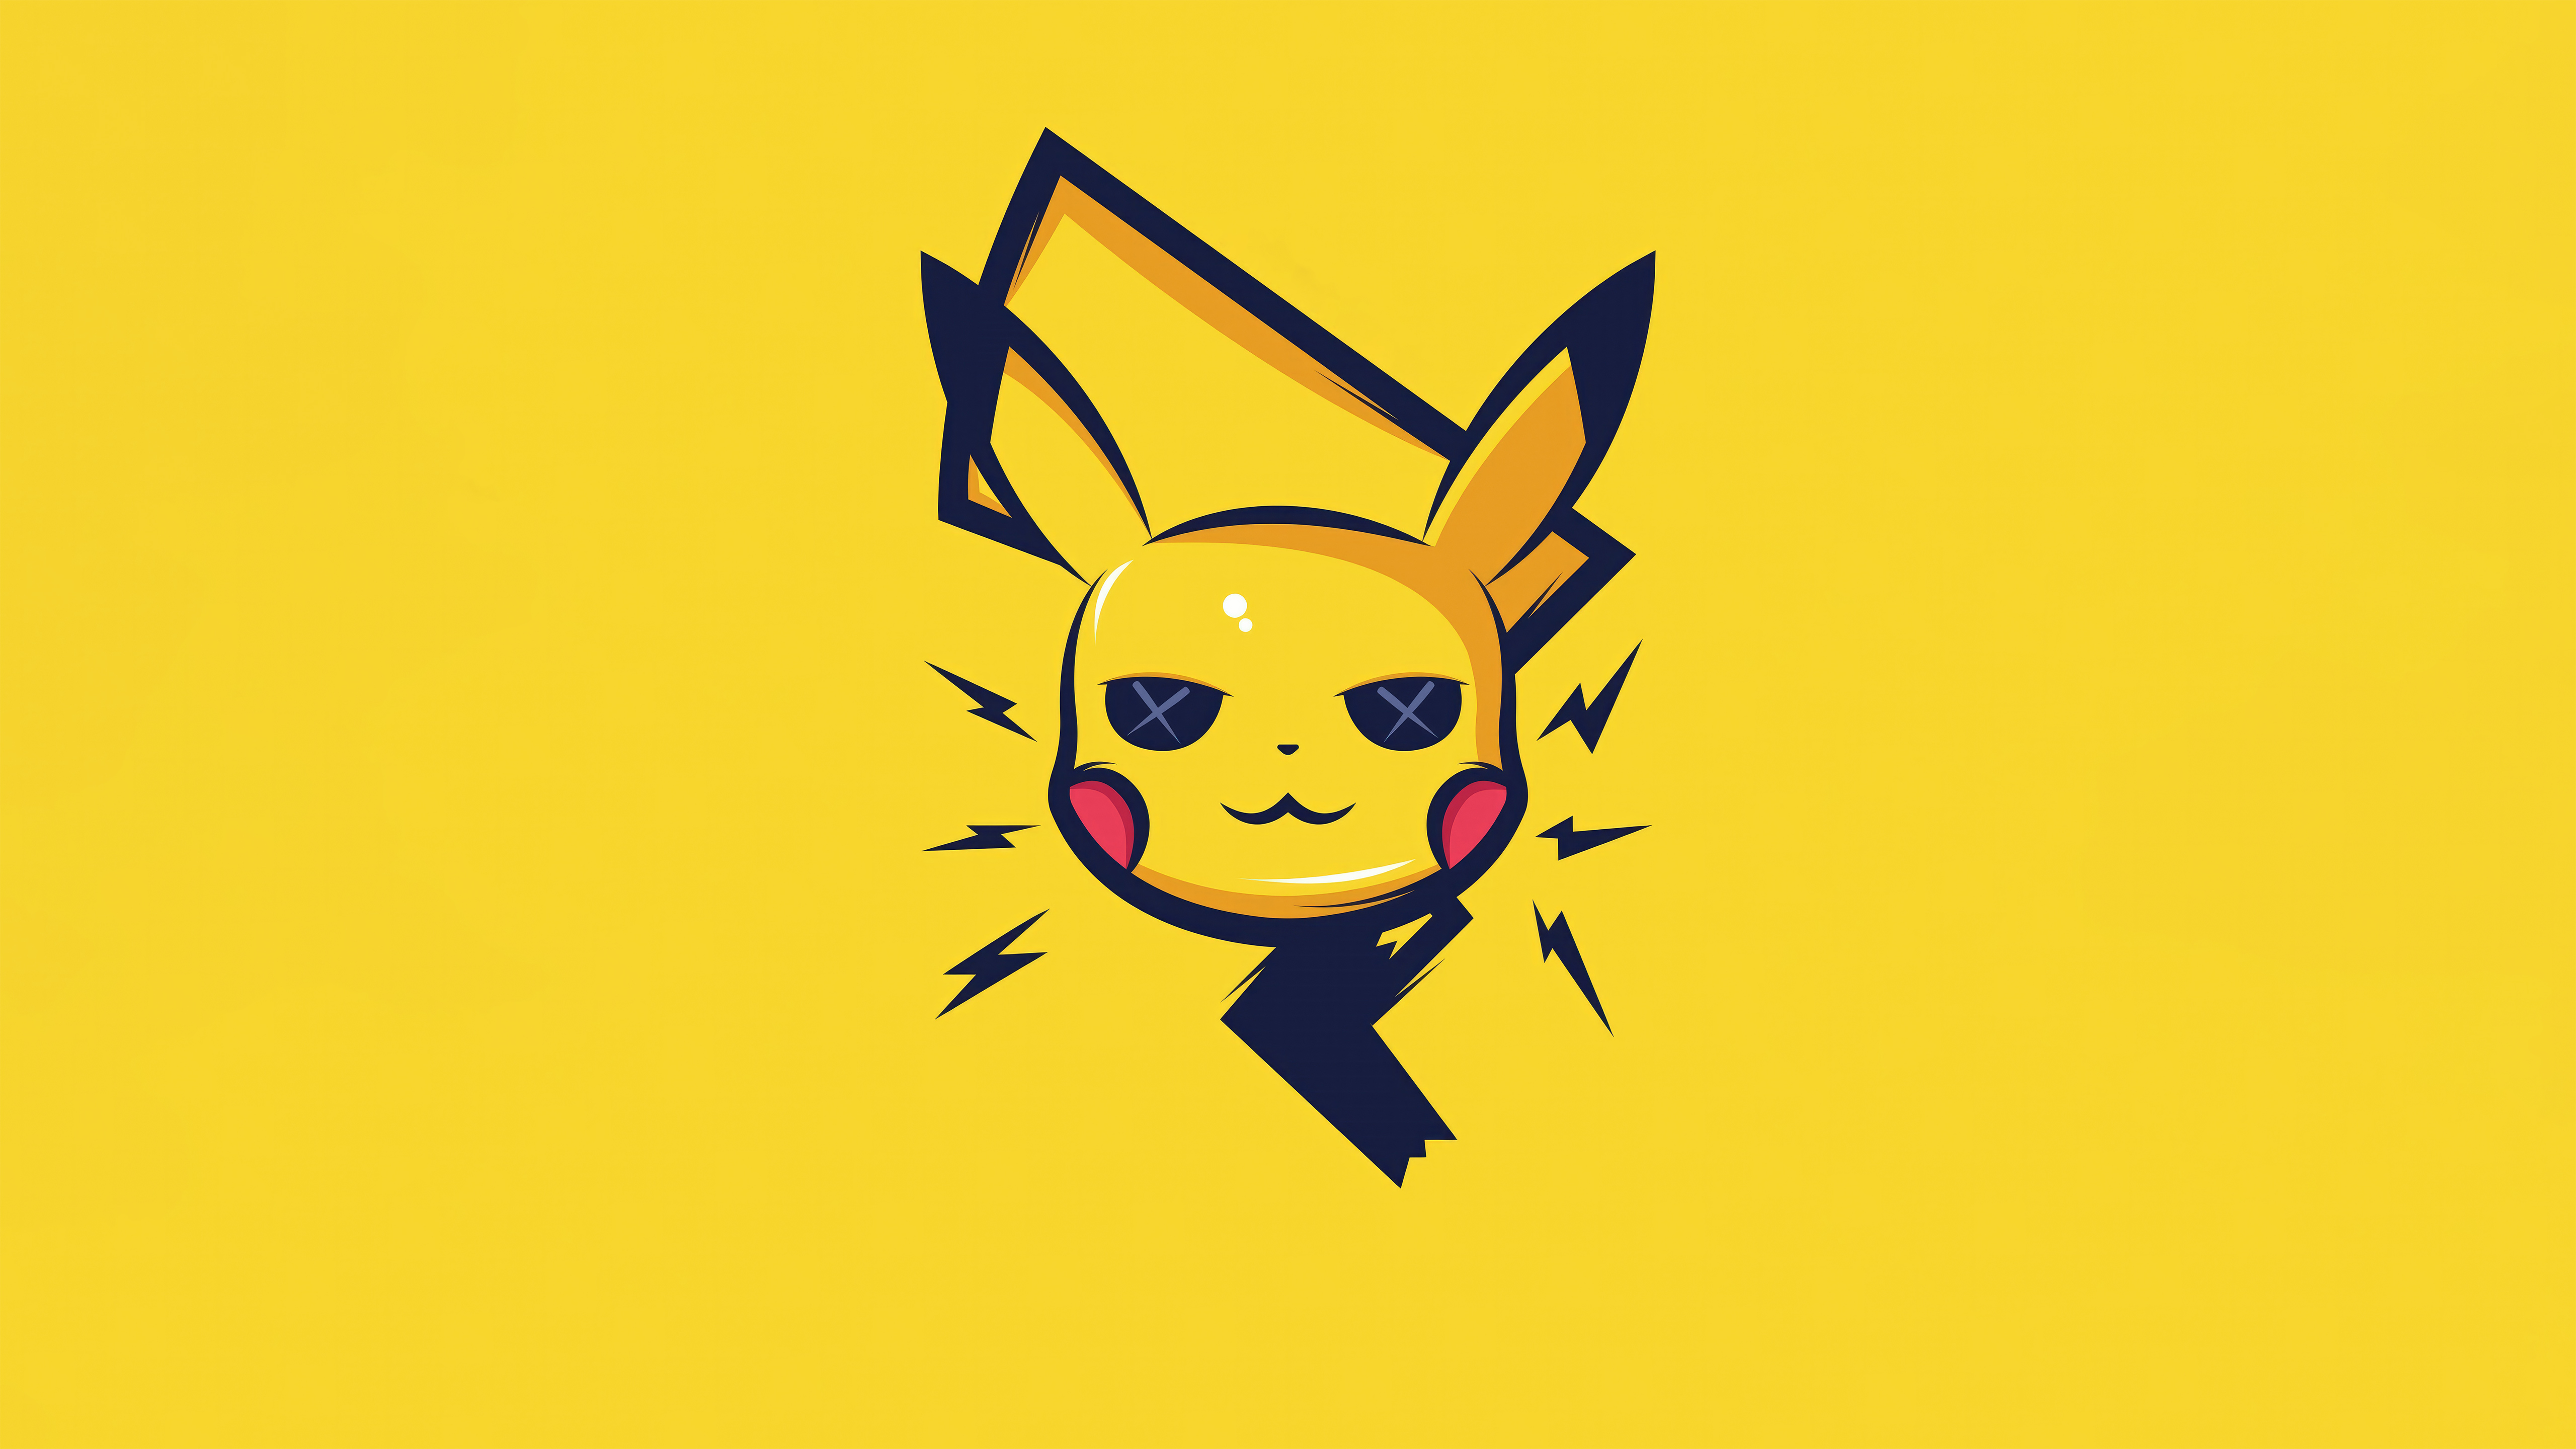 40+ melhores imagens de Pokemon · Download 100% grátis · Fotos  profissionais do Pexels